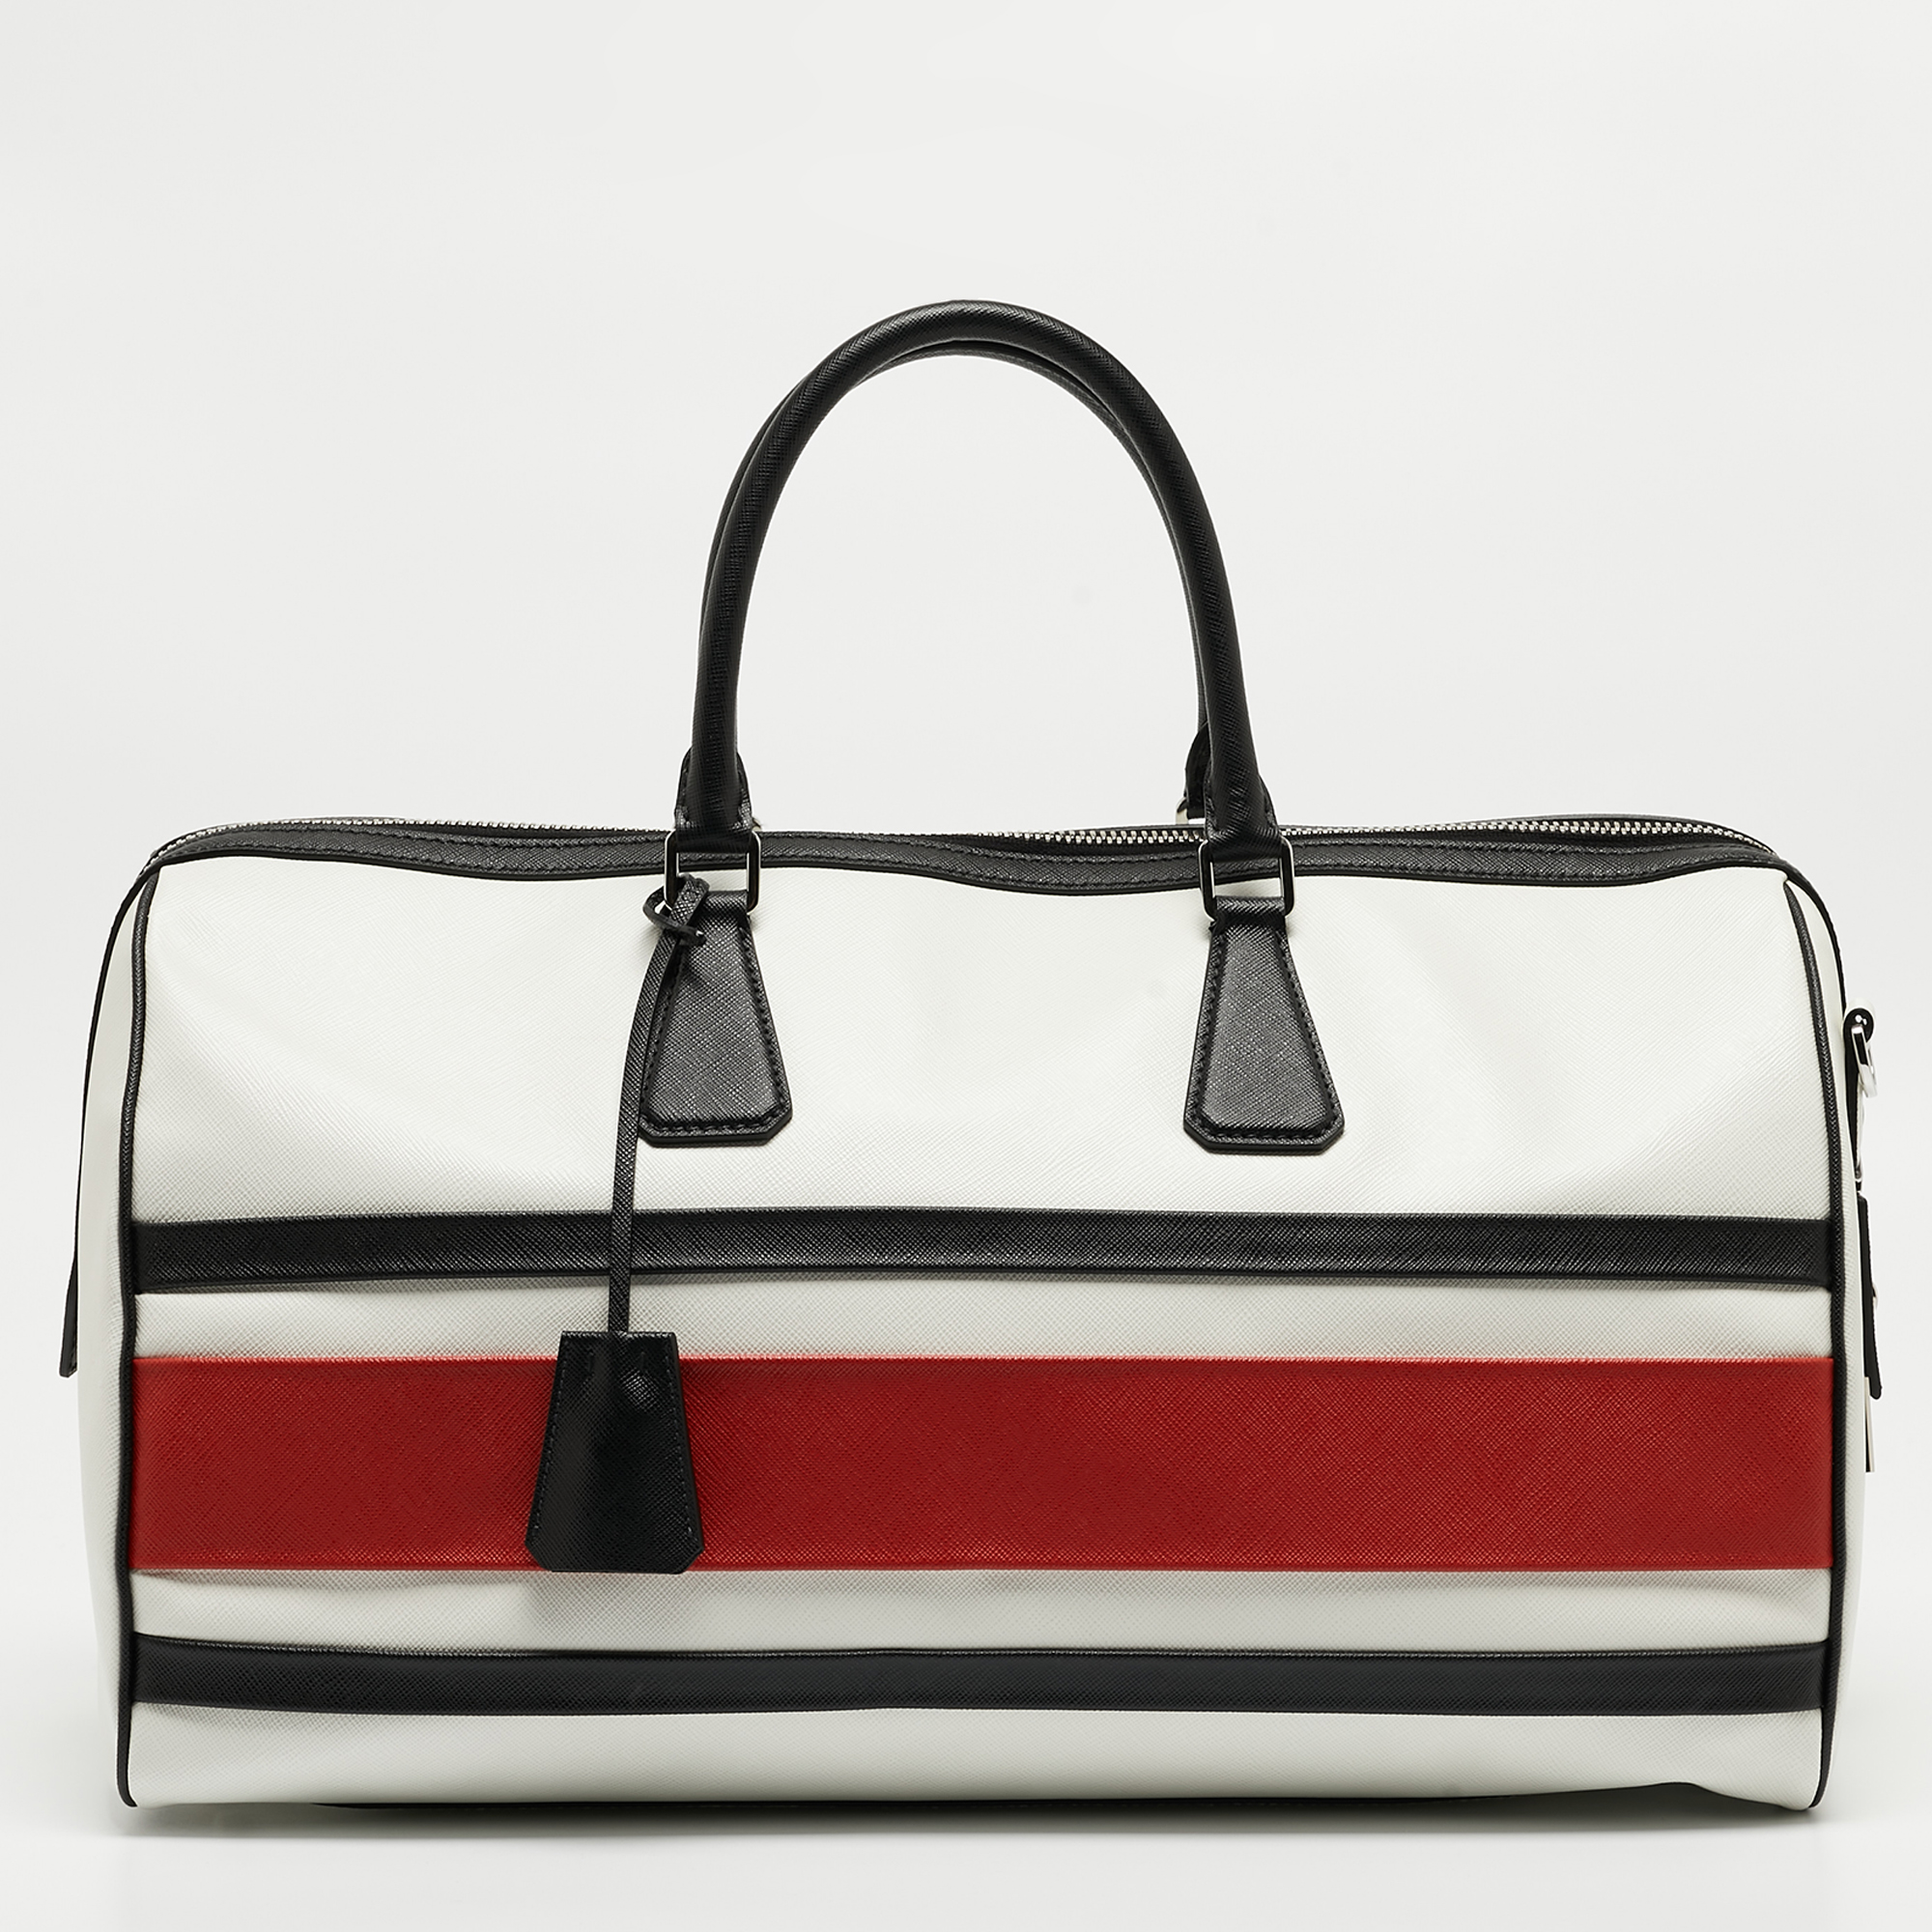 Prada Tricolor Saffiano Leather Travel Bag